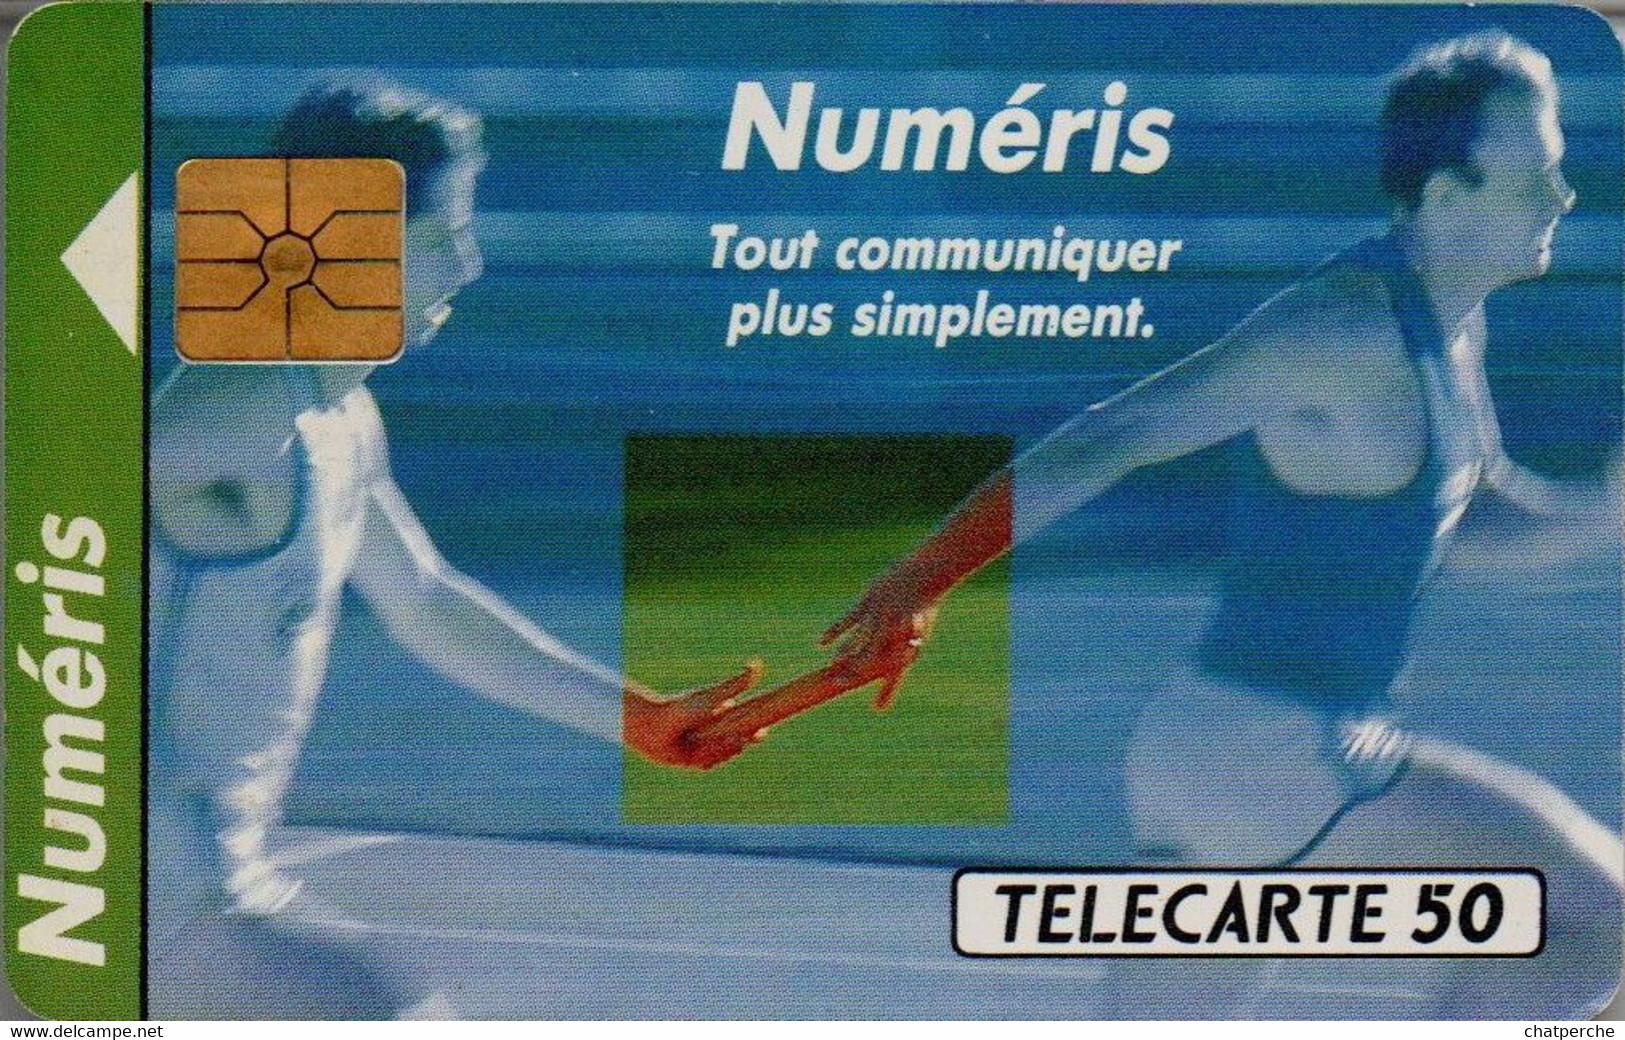 TÉLÉCARTE PHONECARD MONACO OFFICE DES TÉLÉPHONES NUMERIS COMMUNIQUER ATHLÉTISME COURSE RELAIS 50 UNITÉS UTILISÉE - Monaco